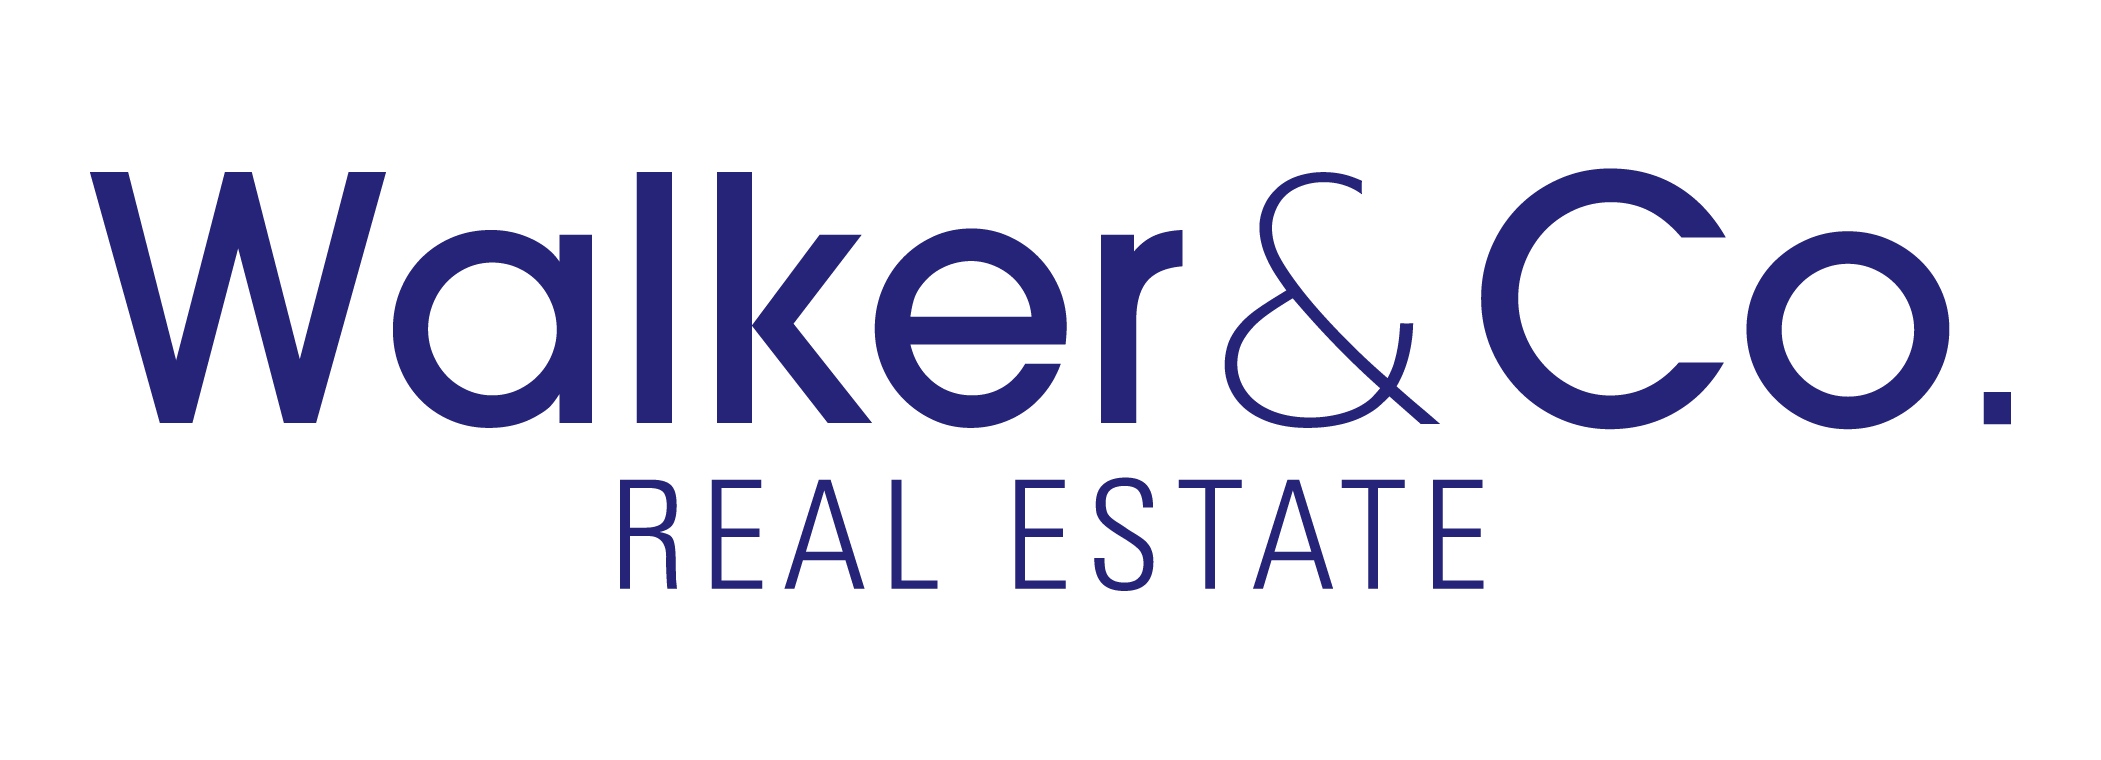 Walker & Co. Real Estate